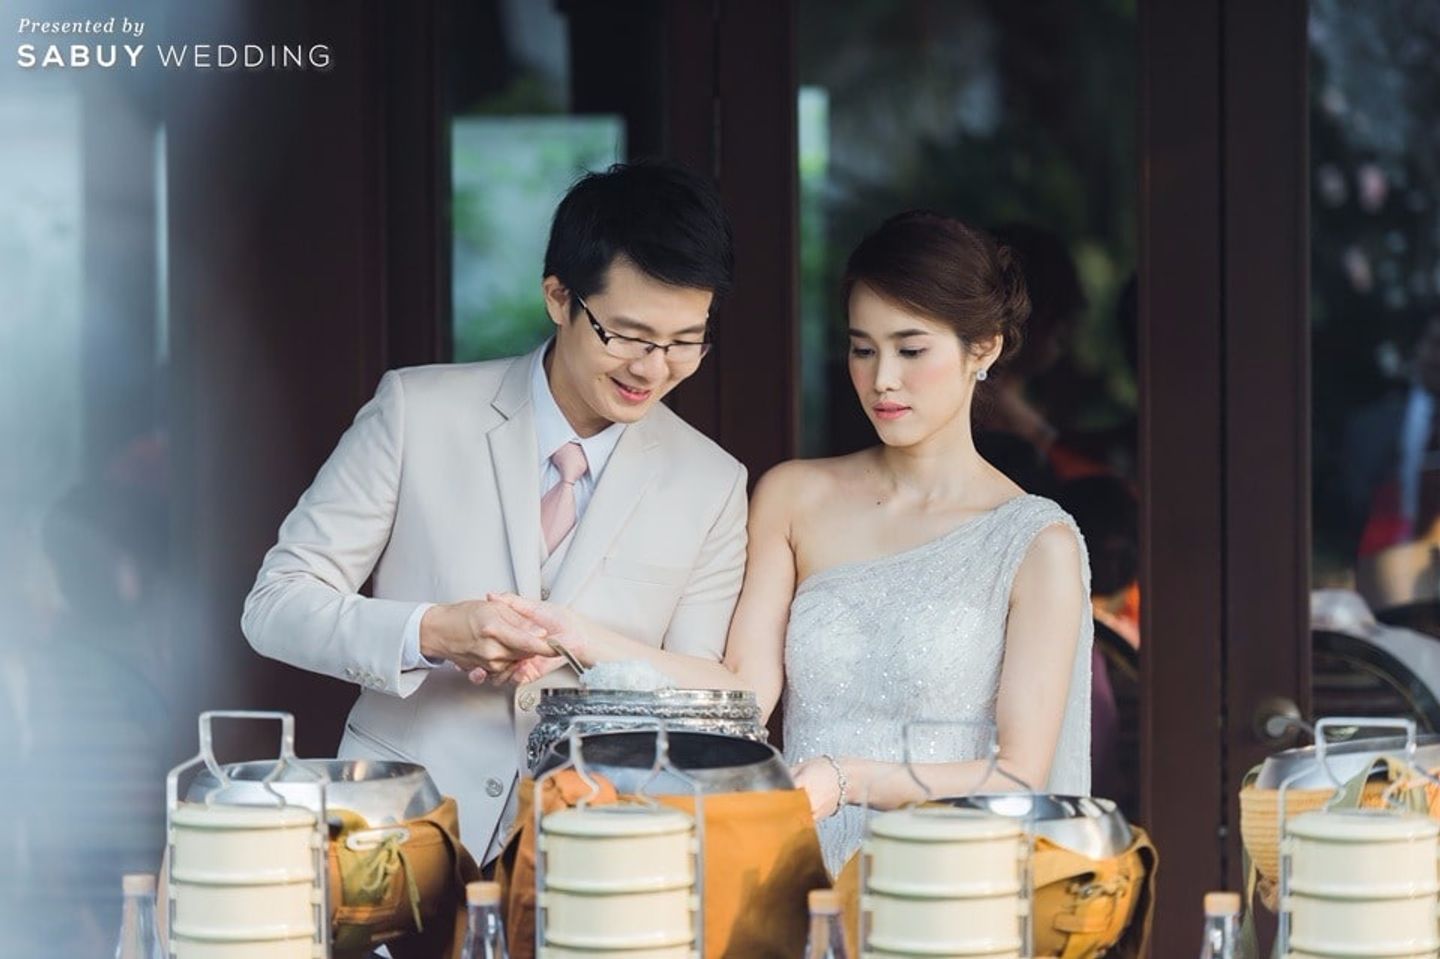 พิธีหมั้น,งานหมั้น,ชุดหมั้น รีวิวงานแต่งหวานละมุนด้วยดอกไม้ ดั่งเทพนิยายในฝัน @Siam Kempinski Hotel Bangkok